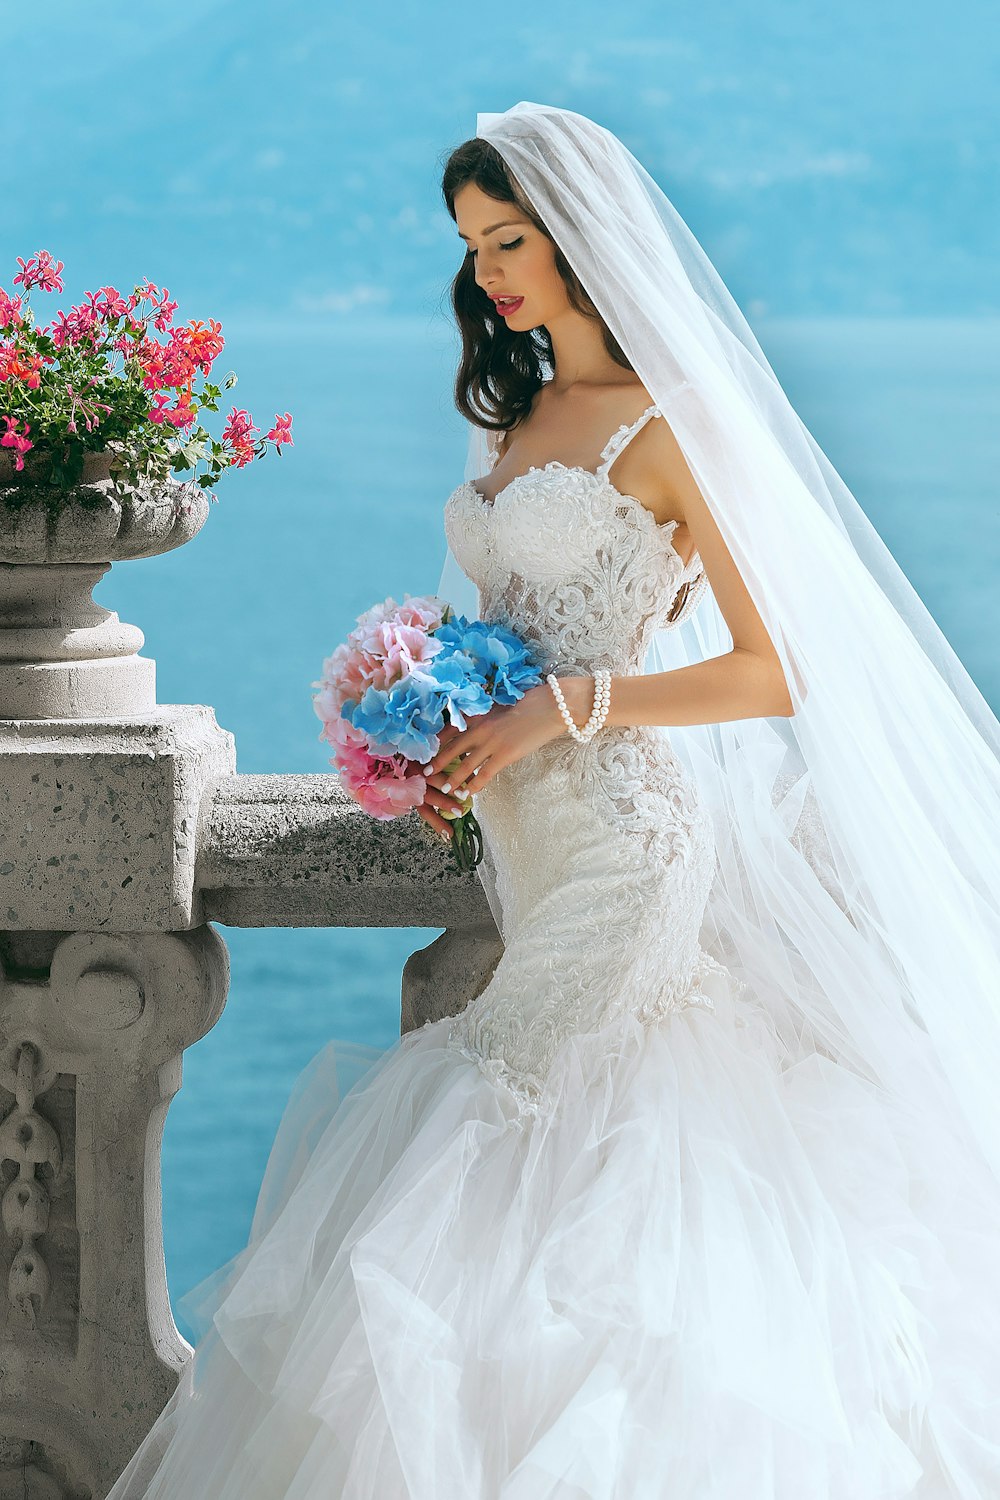 Frau im Hochzeitskleid, während sie tagsüber eine Blume hält